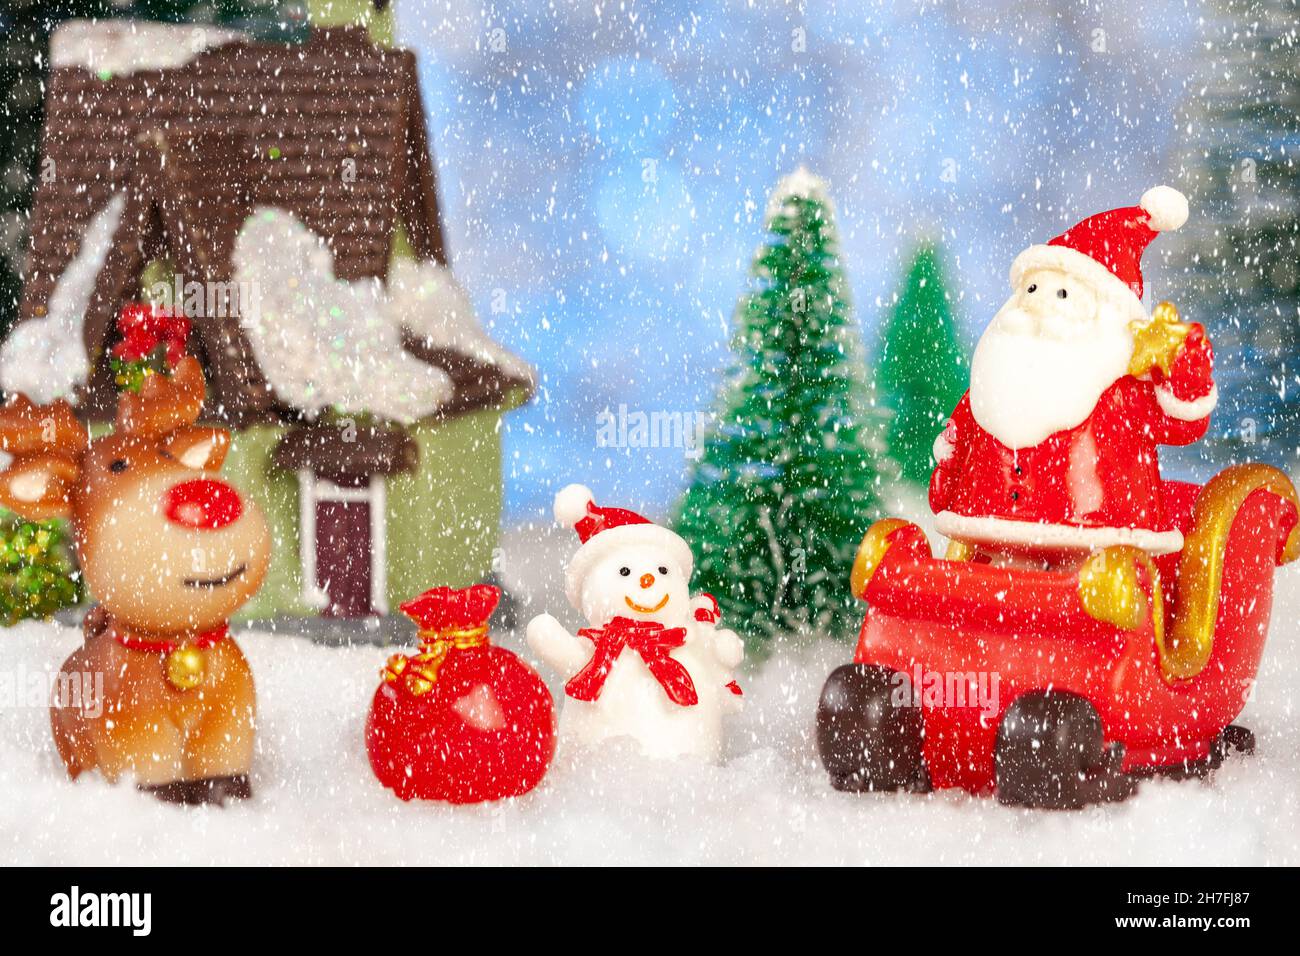 tarjeta de felicitación de año nuevo y navidad, santa claus y renos con regalos en trineo, concepto Foto de stock